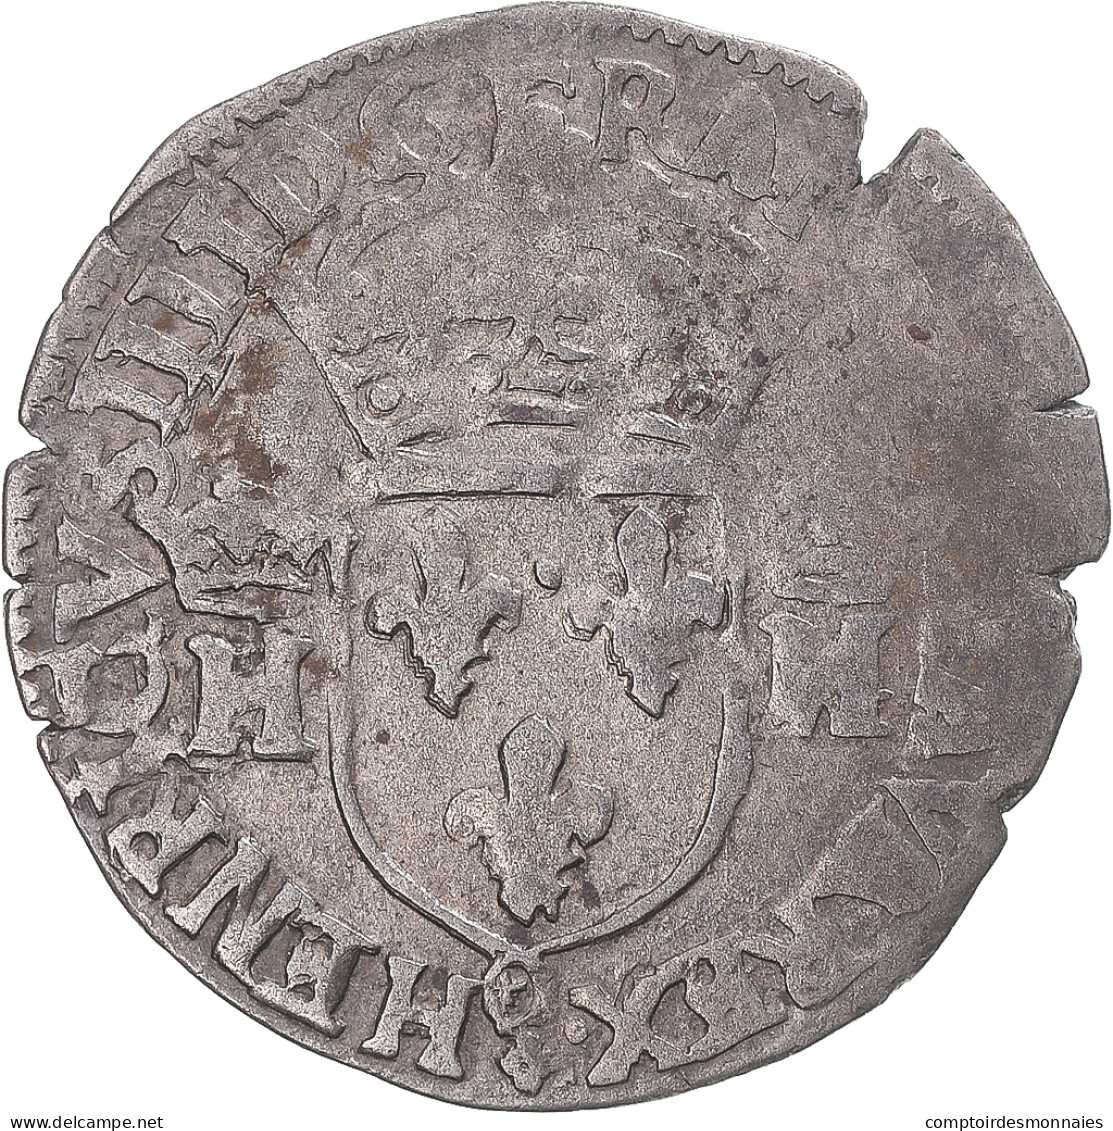 Monnaie, France, Henri IV, Douzain Aux 2 H Couronnés, Date Incertaine - 1589-1610 Henry IV The Great